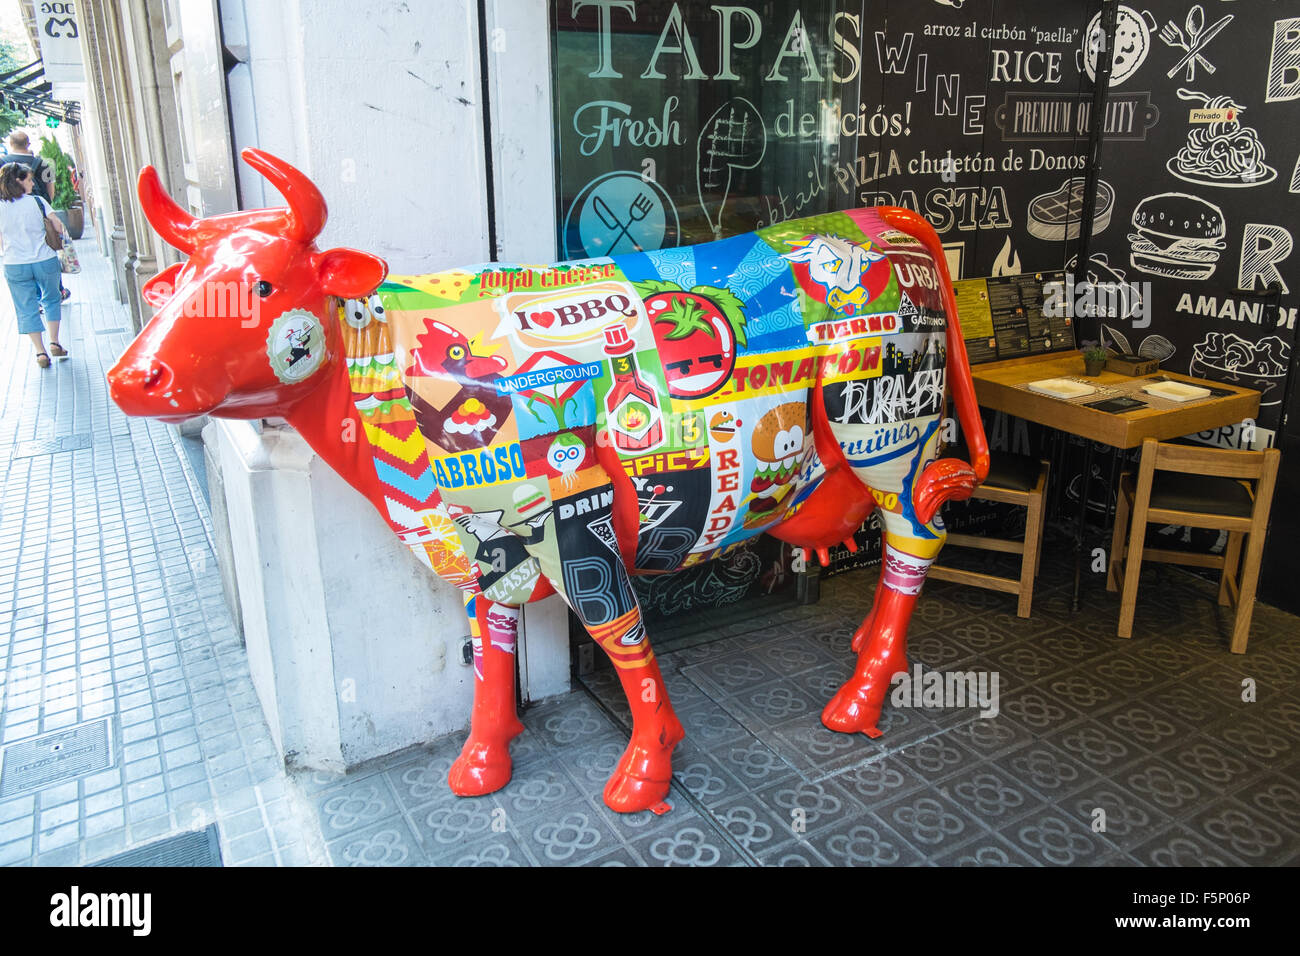 Kuh-Werbung außerhalb Pura Brasa, Grill-Restaurant in der Nähe von Plaza  Catalunya, Barcelona, Katalonien, Spanien Stockfotografie - Alamy